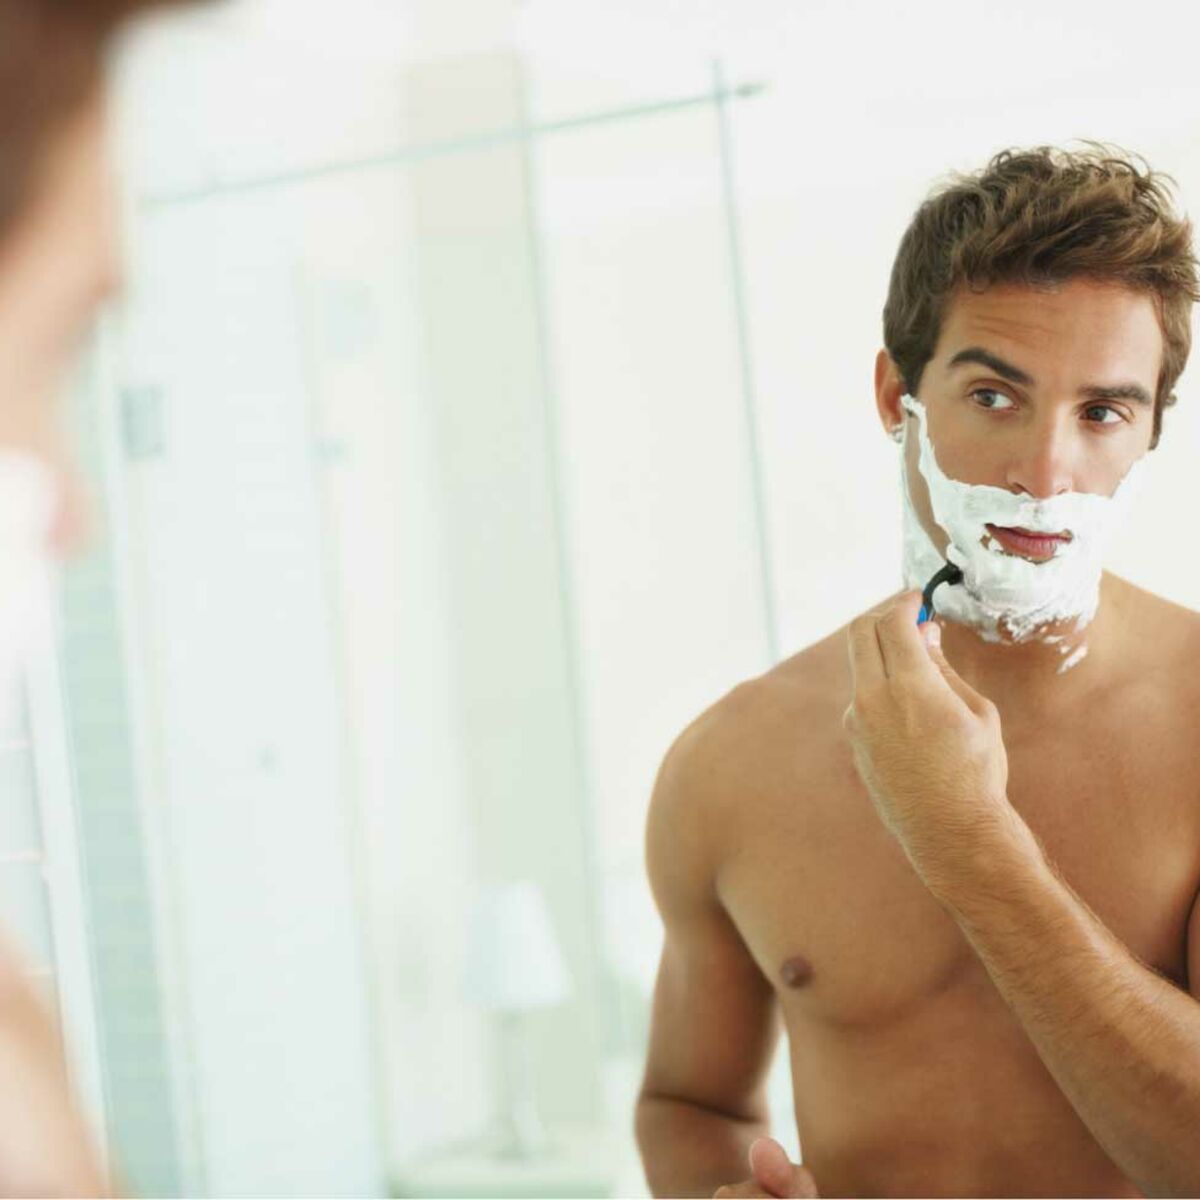 Брею мужу видео. Мужчина бреется. Идеальное бритье для мужчин. Мужчина бреется фото. Мужчина бреется в ванной.